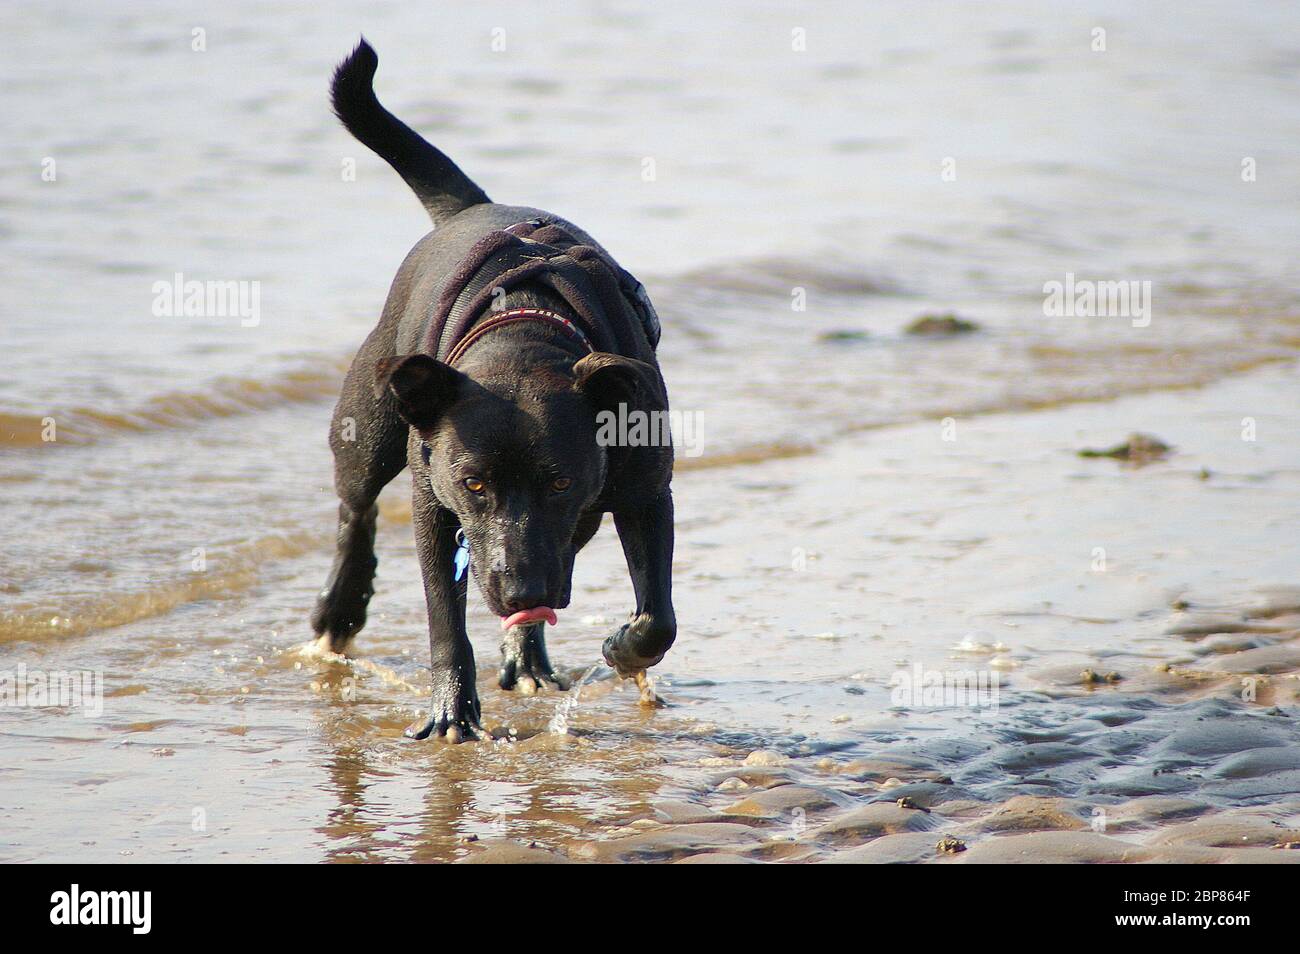 Un Staffordshire Bull Terrier noir et bringé a traversé une ou plusieurs races inconnues Banque D'Images